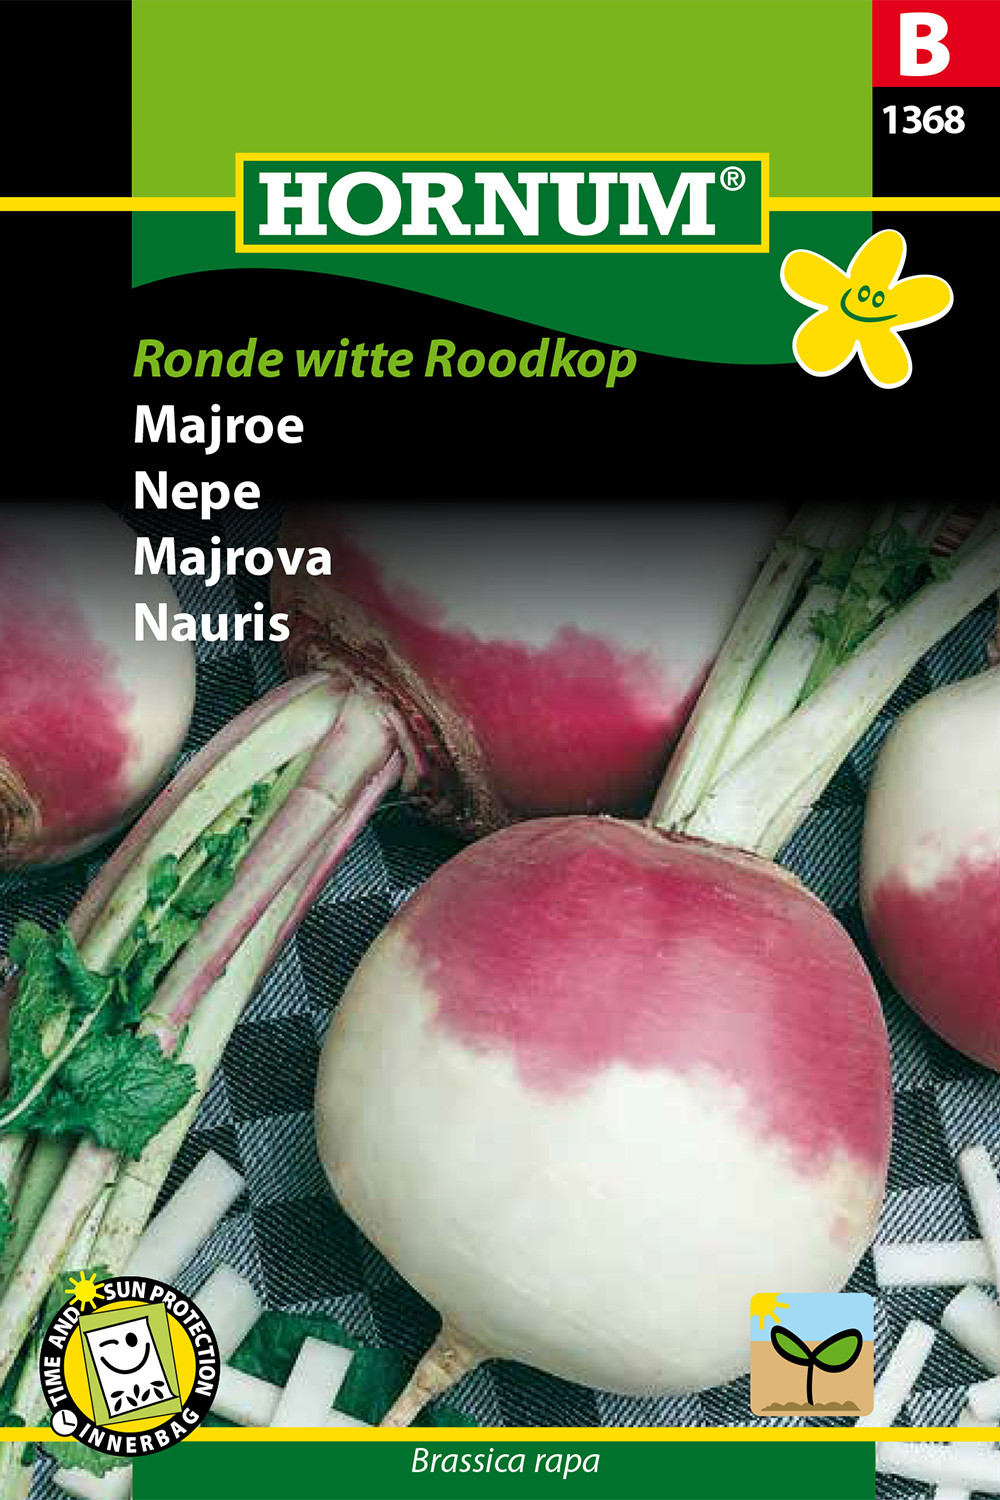 Forlænge middag Katastrofe Brassica rapa 'Ronde Witte Roodkop' (Majroe)